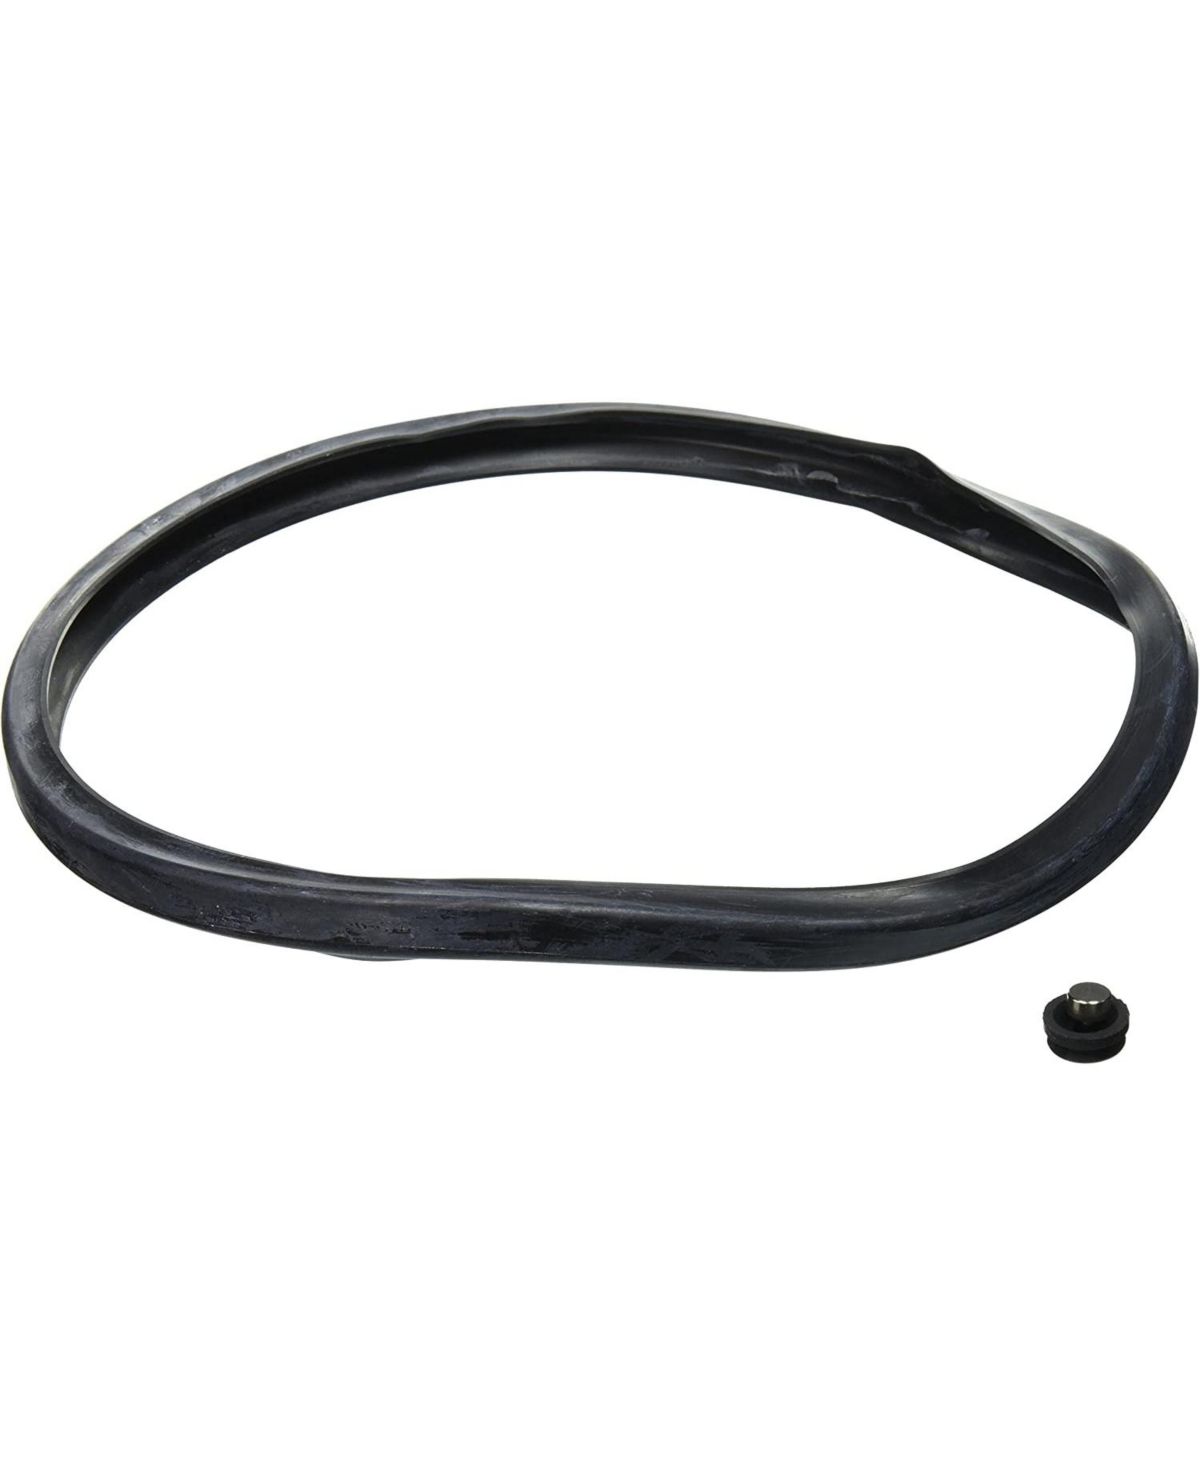 Presto 09906 Pressure Cooker Sealing Ring In Black